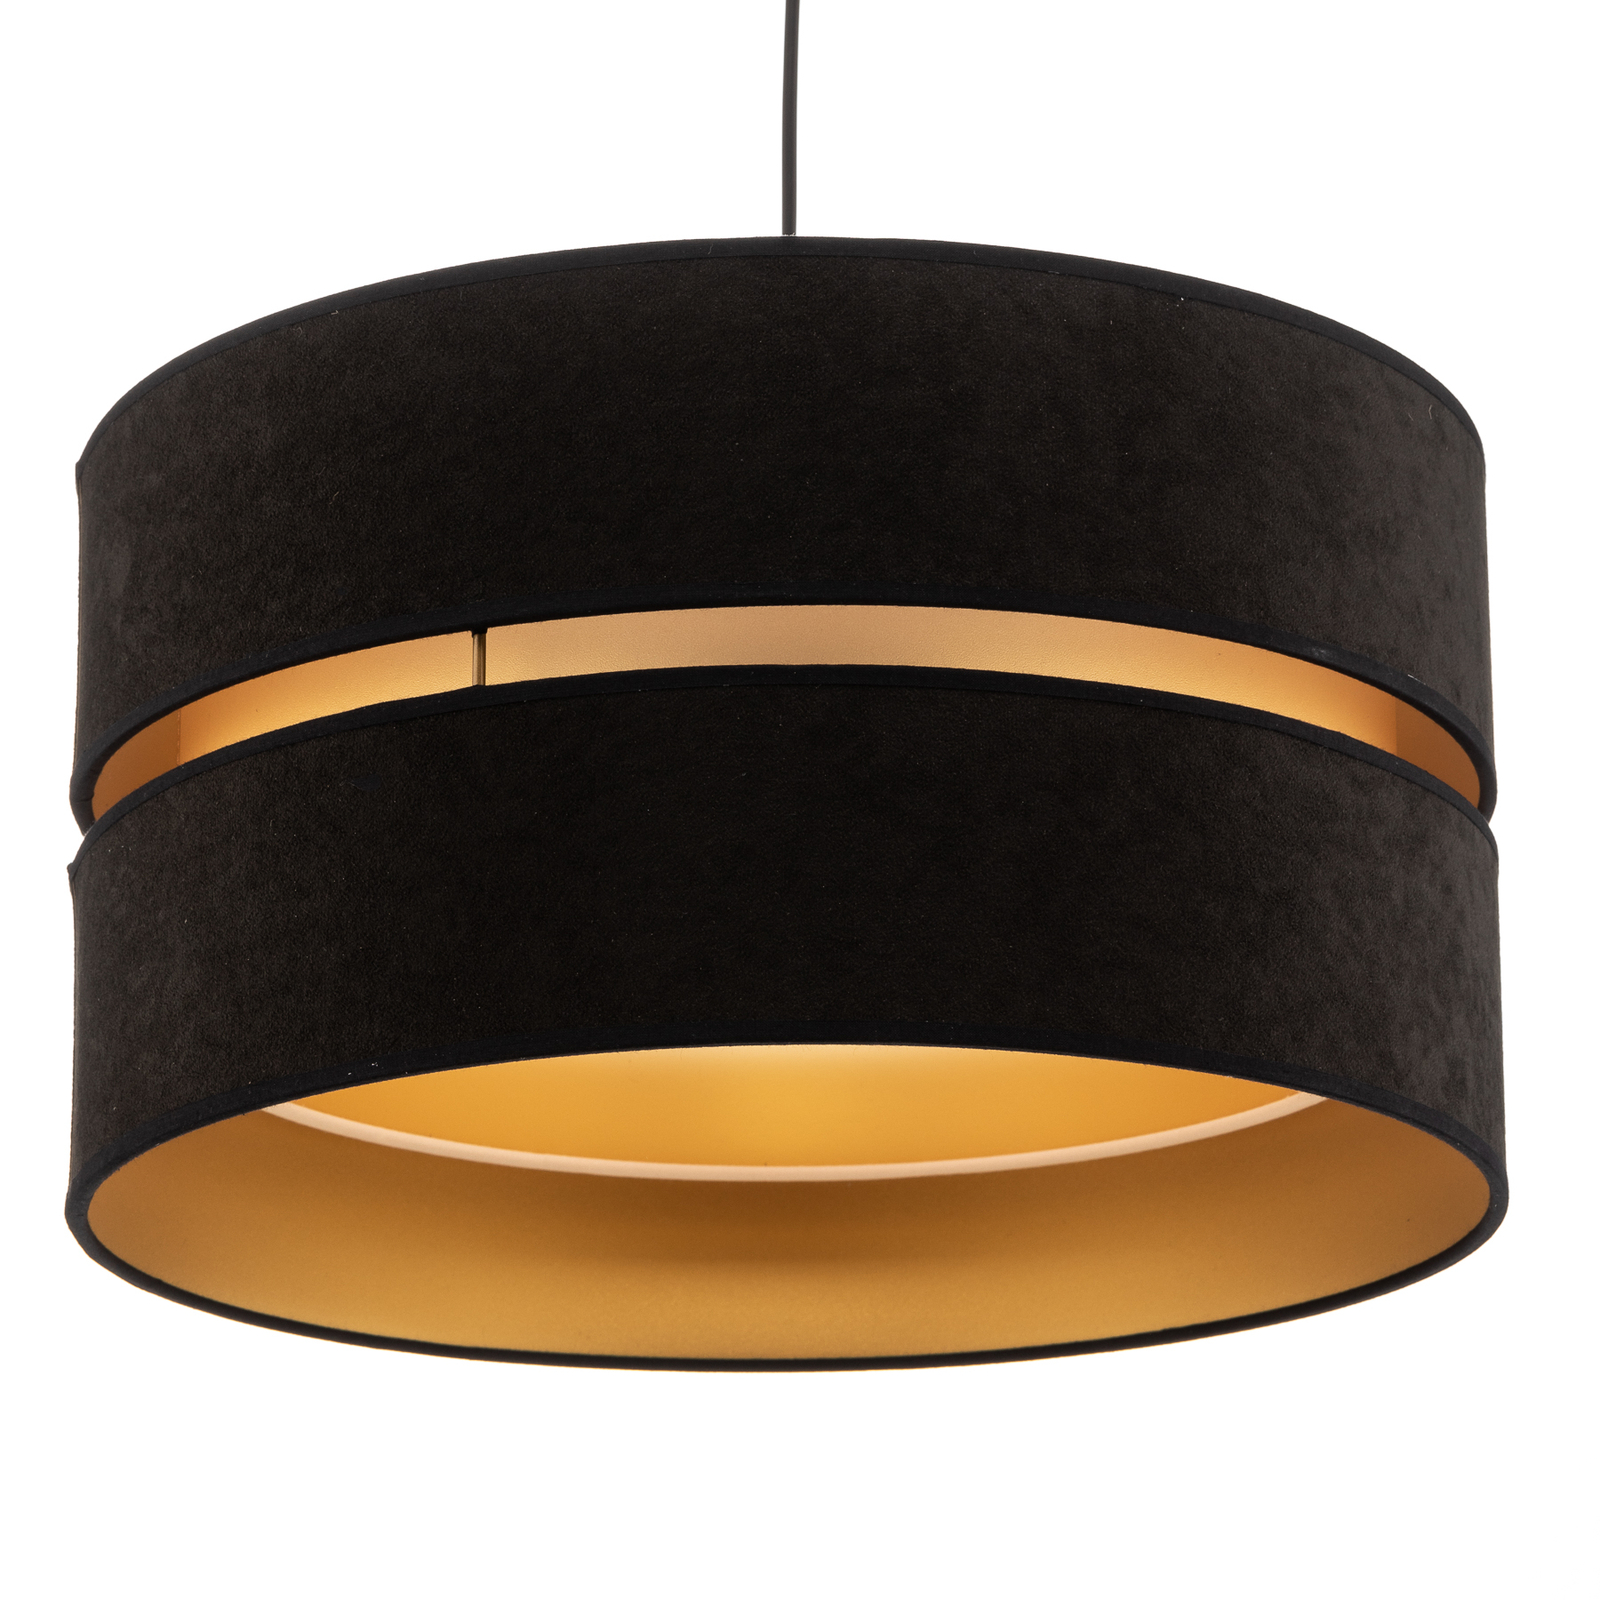 Hanglamp Golden Duo, zwart/goud, Ø40cm, 1-lamp